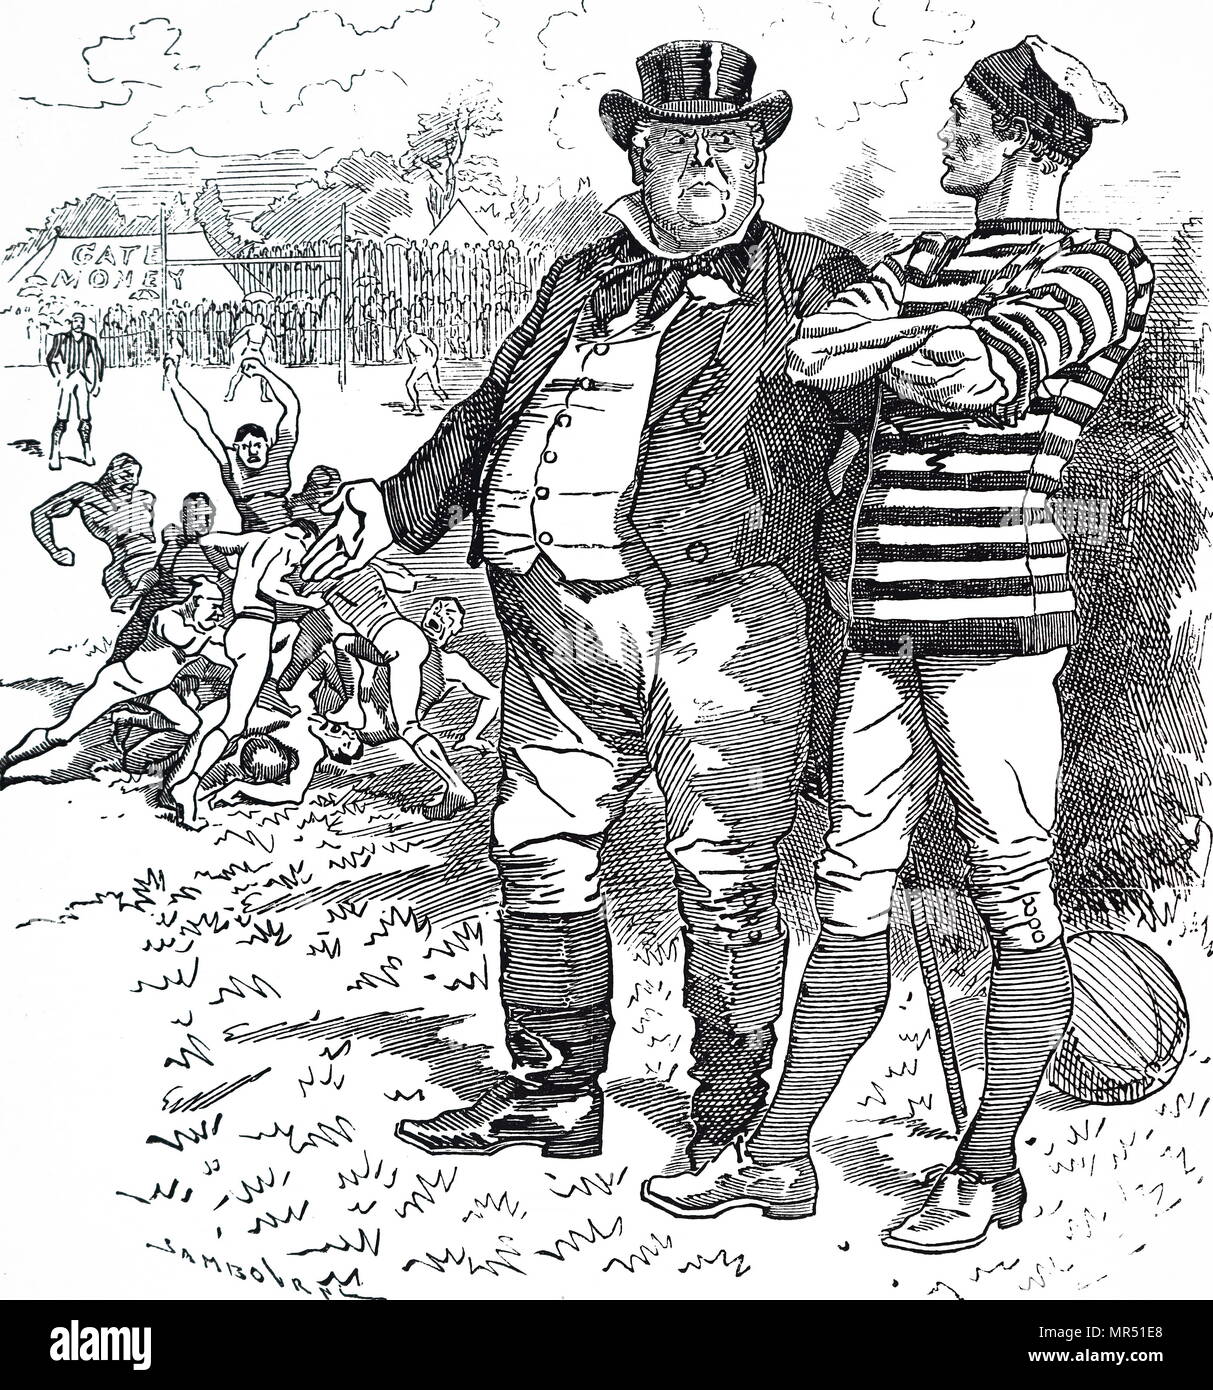 Caricature montrant John Bull exhortant le Rugby Football Association pour la rudesse de leur jeu. John Bull est une personnification de la France en général et en particulier l'Angleterre, en particulier dans les caricatures politiques et autres œuvres graphiques. En date du 19e siècle Banque D'Images